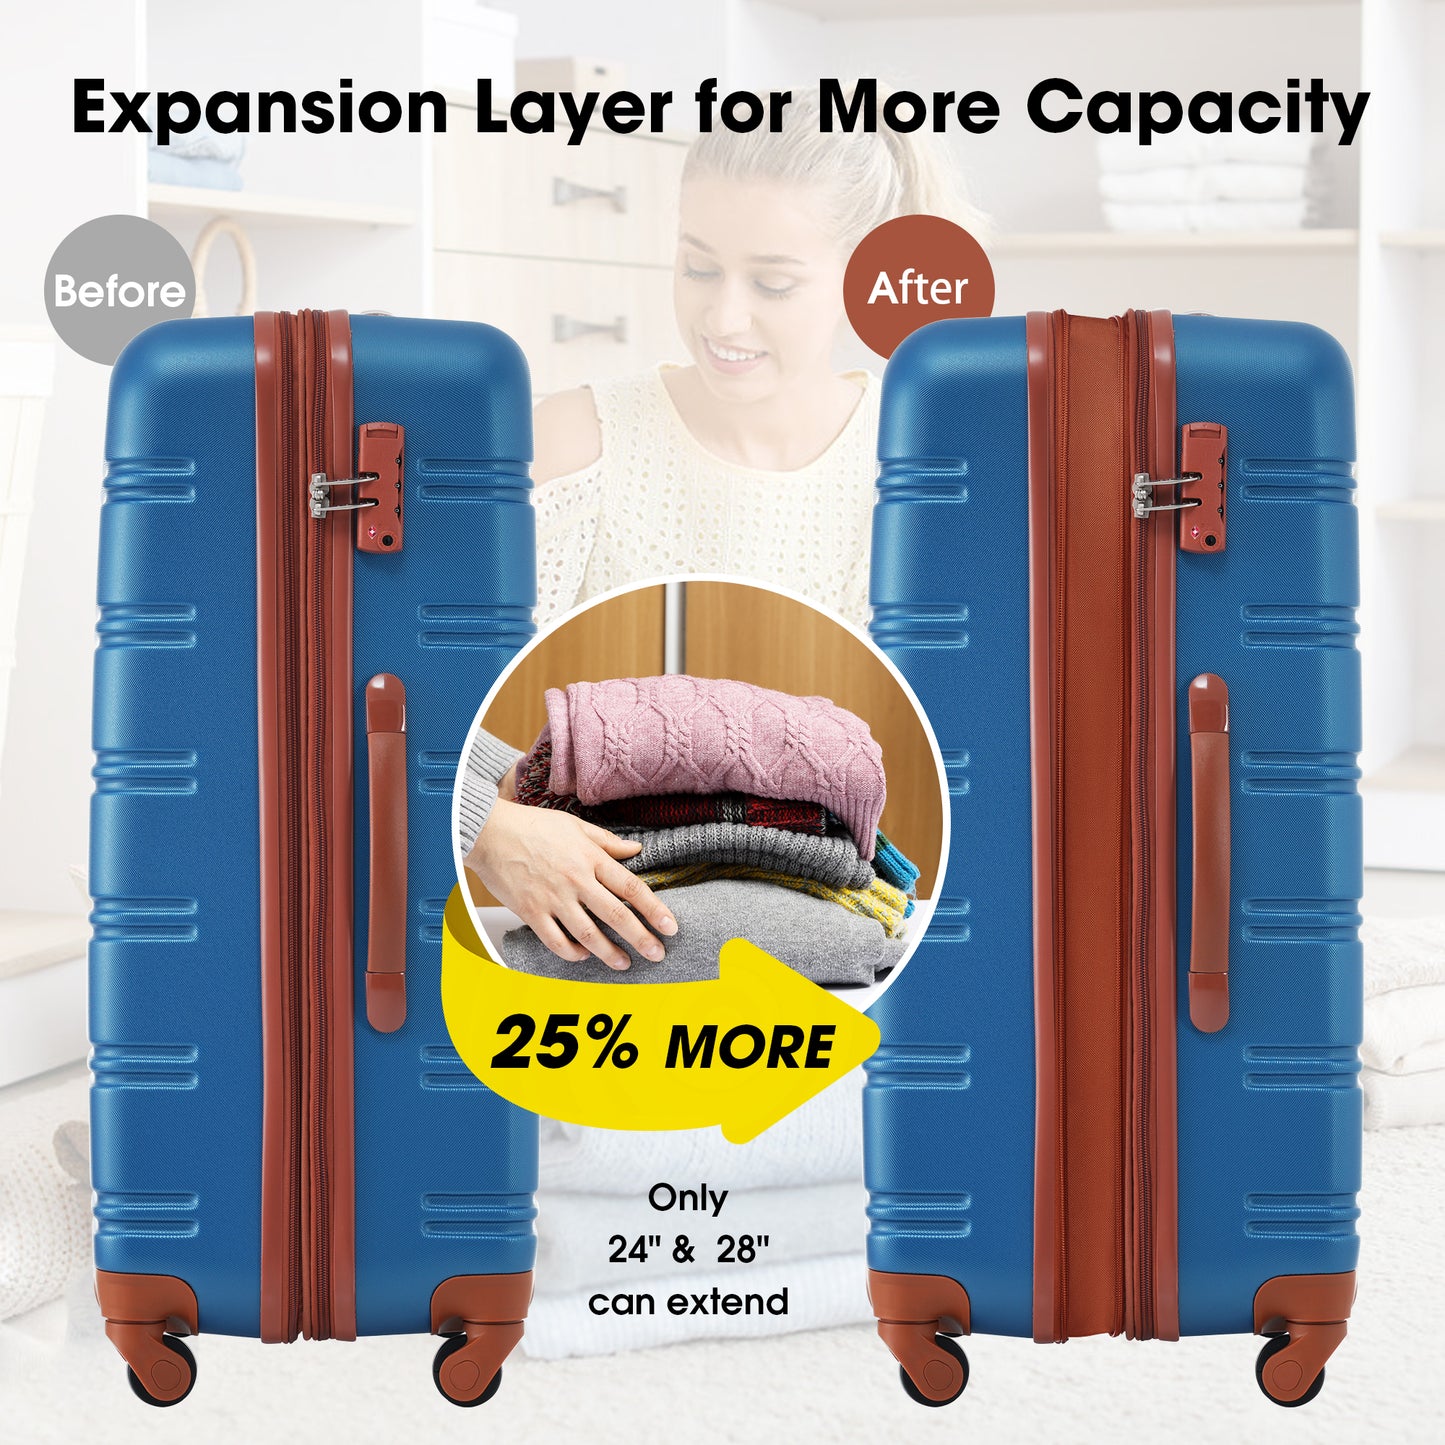 Ensemble de bagages 3 pièces bleu marine Valise rigide à roulettes avec serrure TSA 20